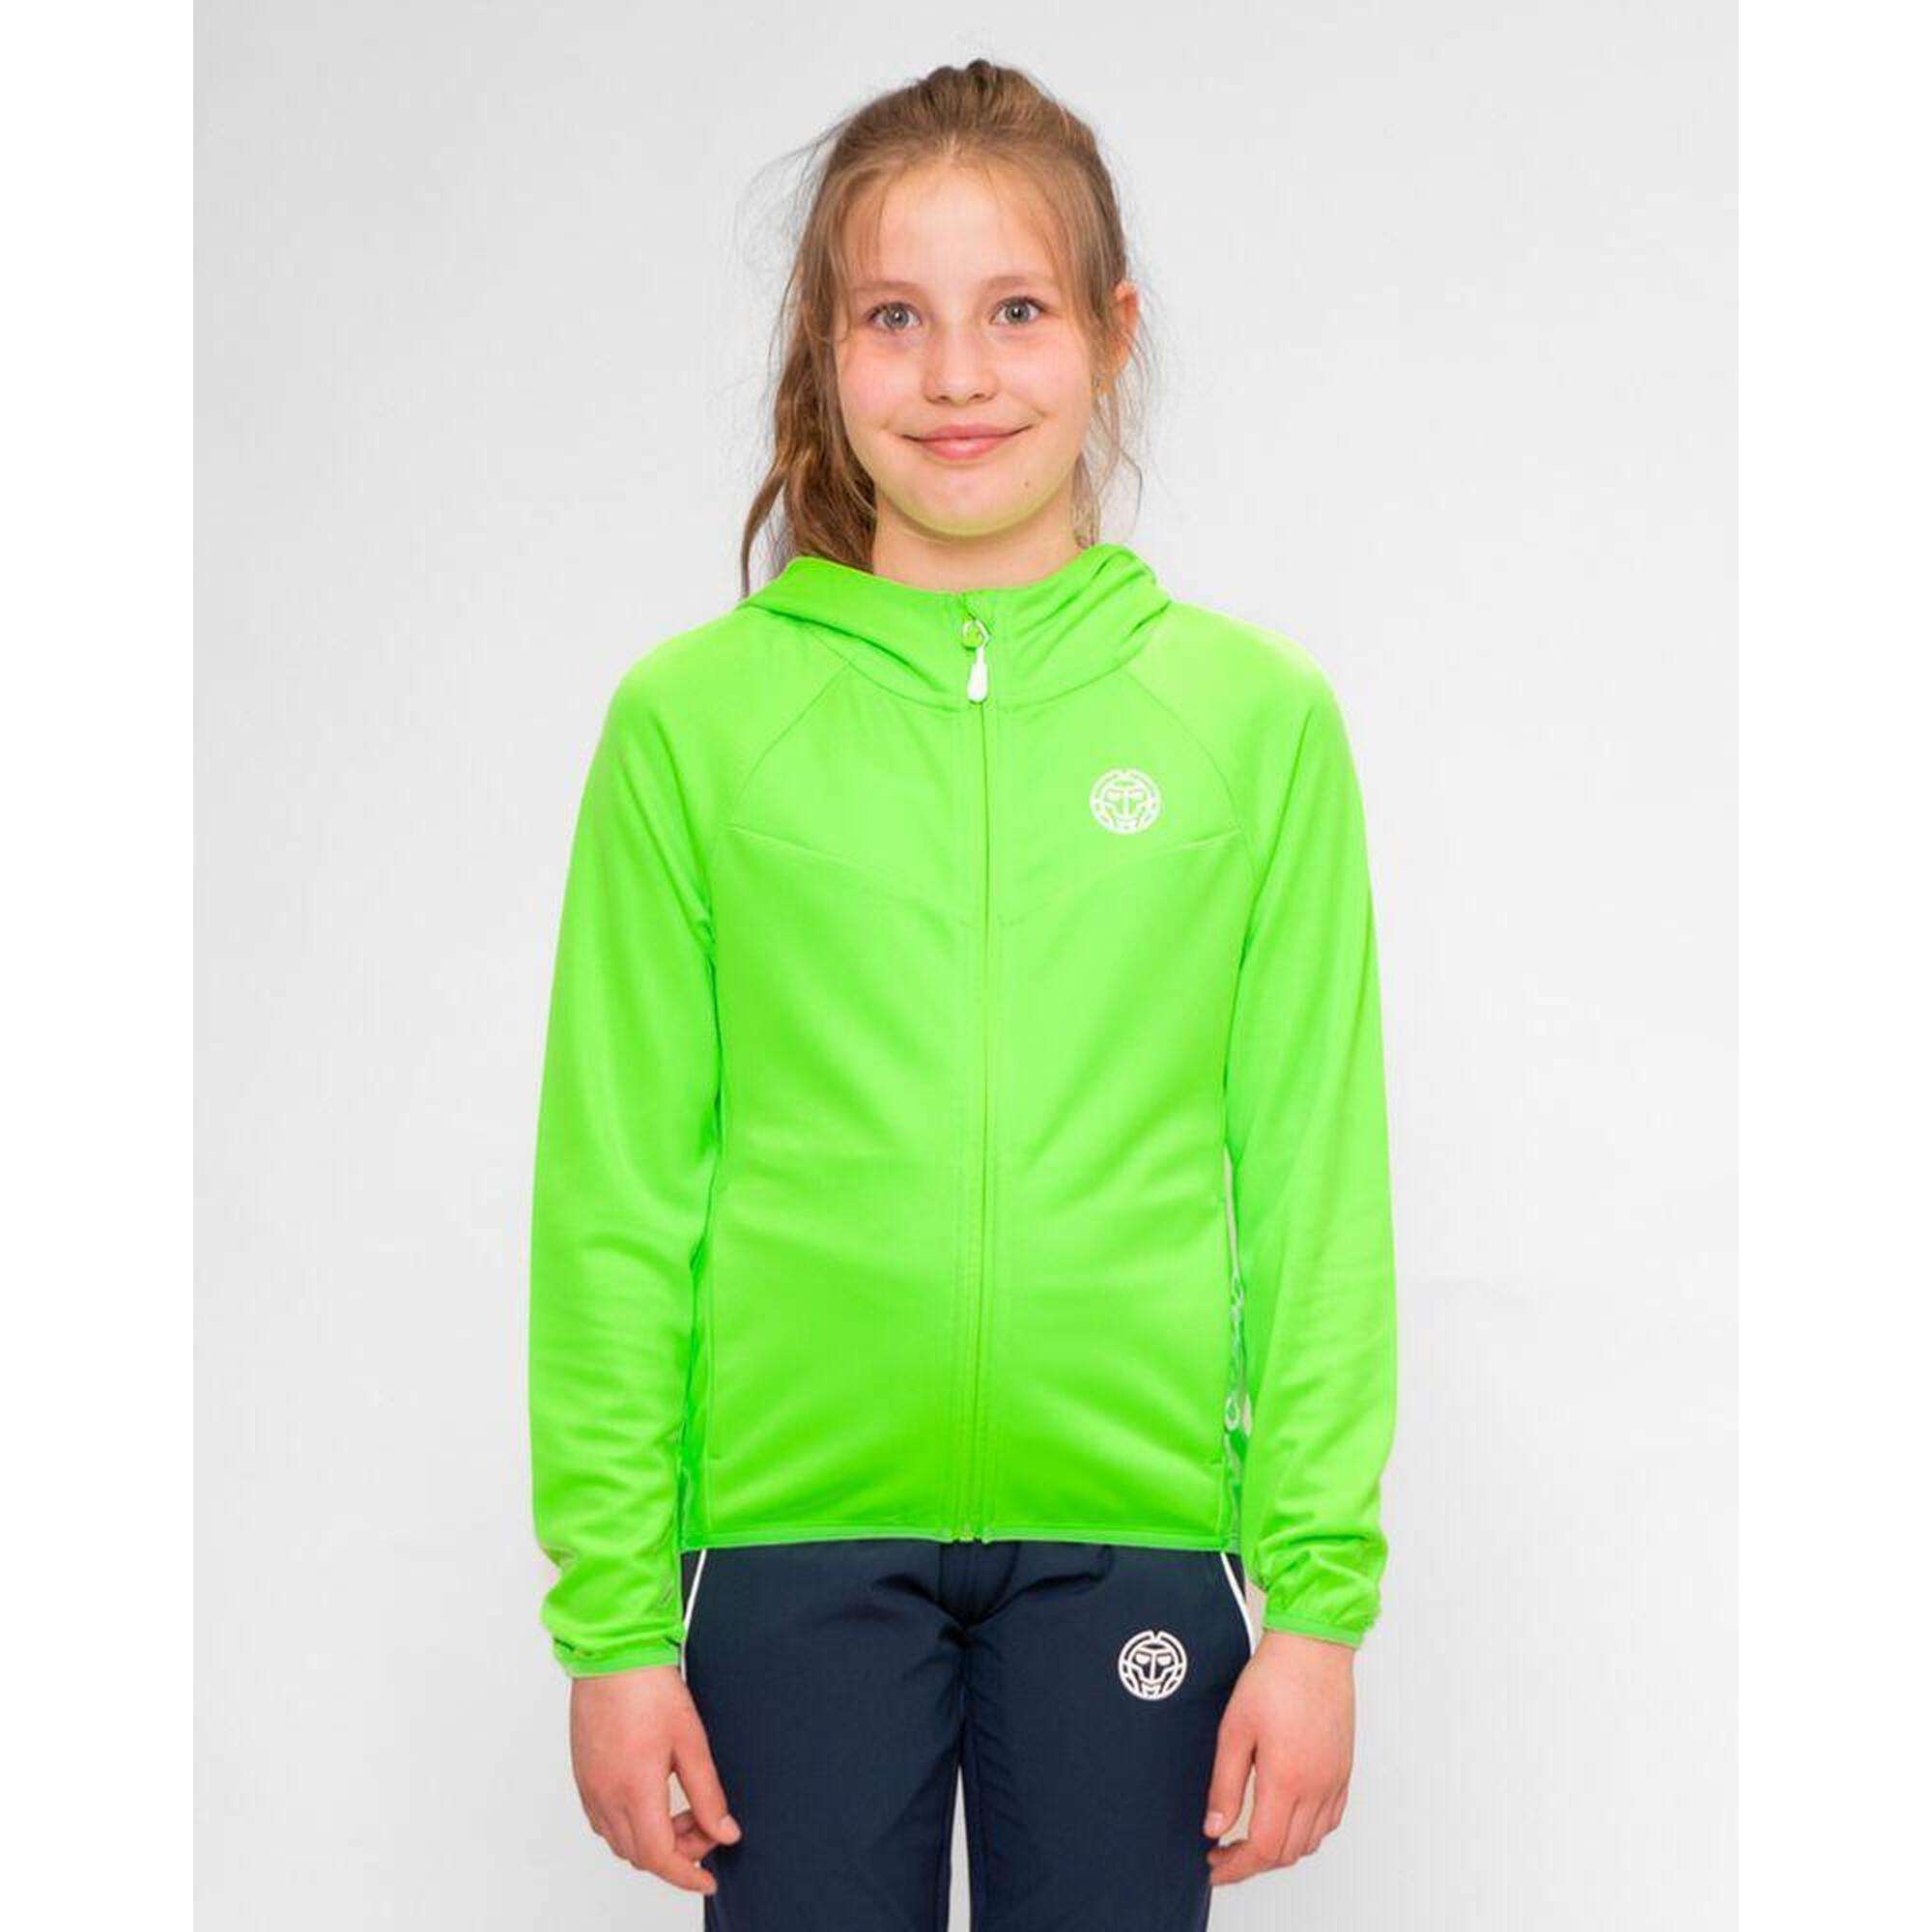 Crew Junior Jacket - neon green